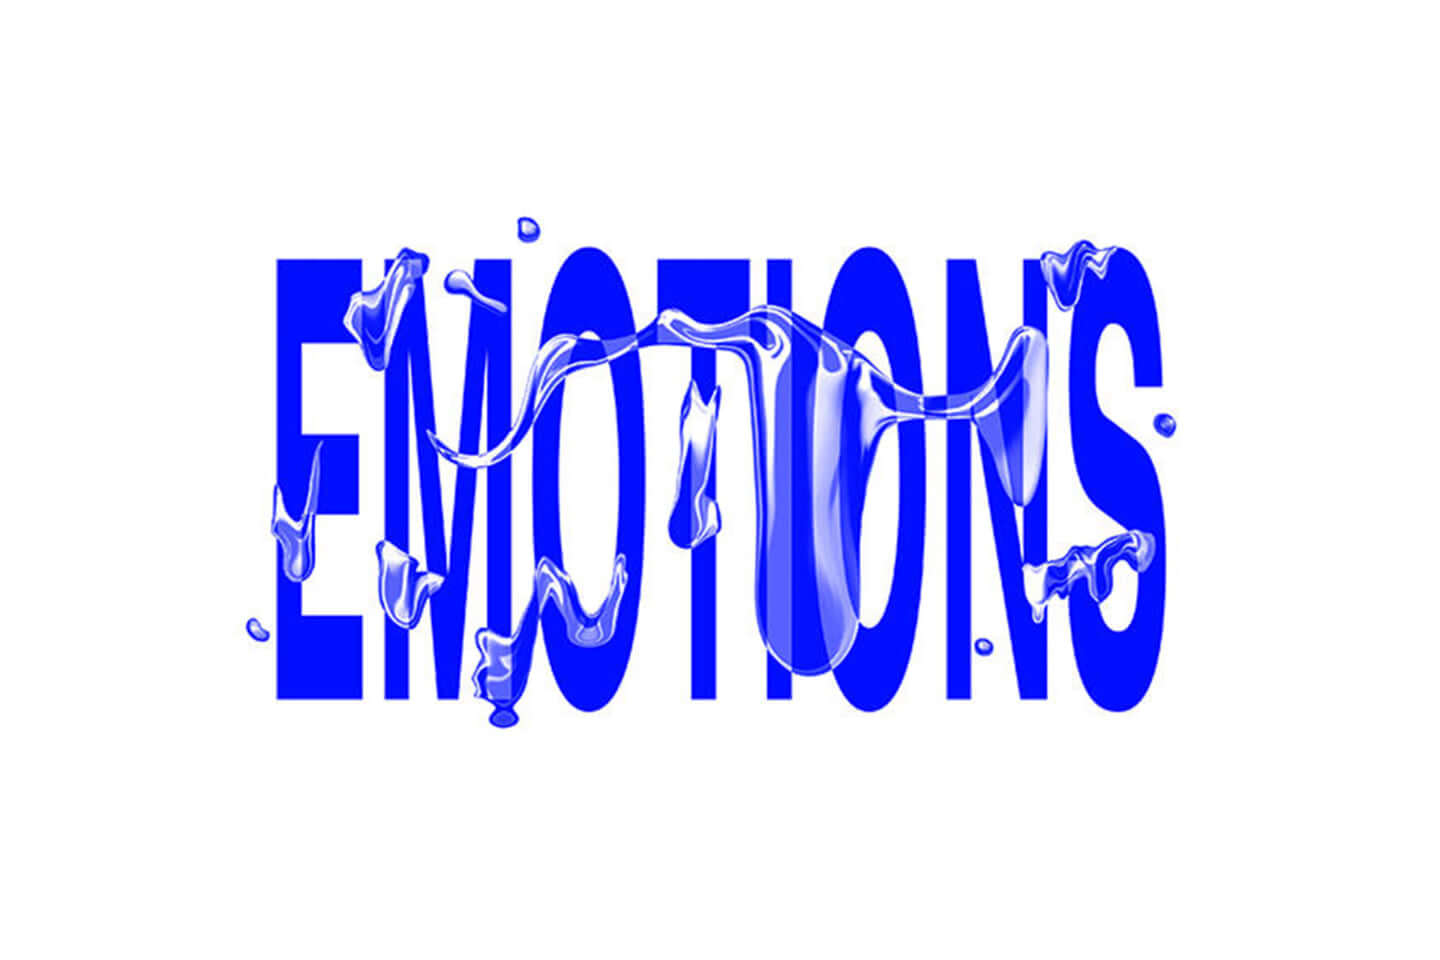 WWW & WWW X Anniversaries "Emotions"